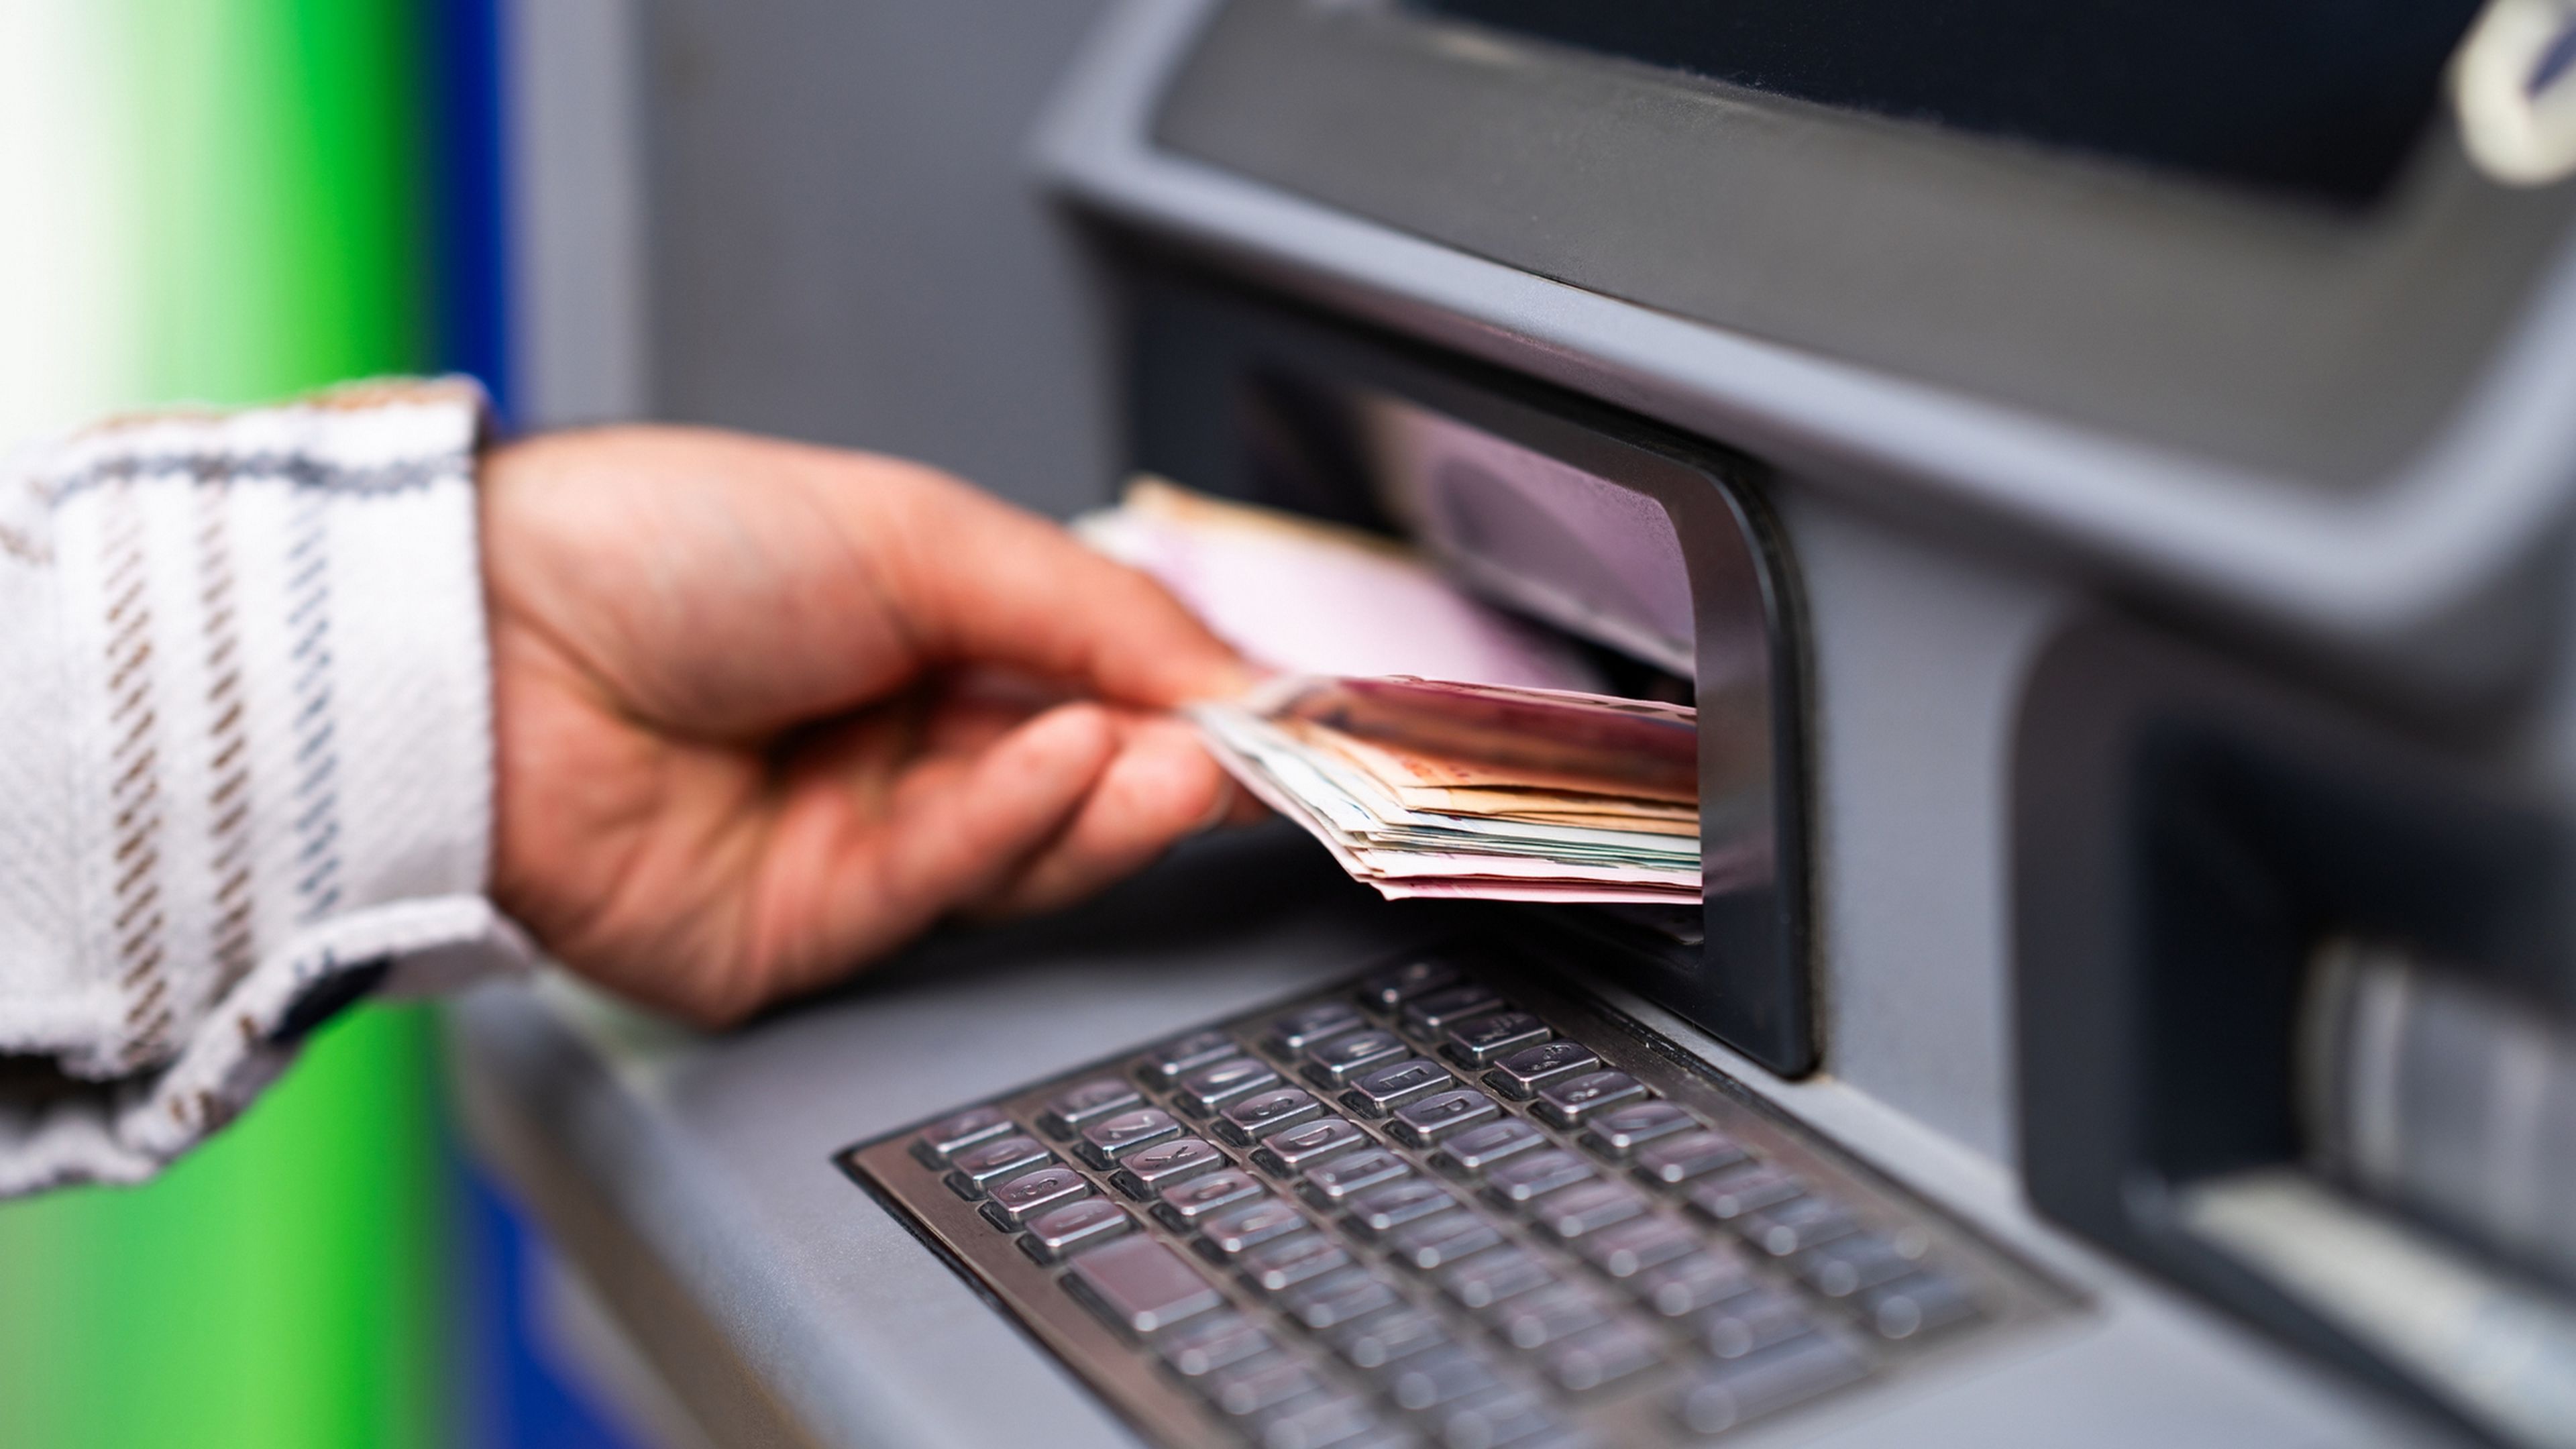 Los bancos cambian la cantidad máxima de dinero que puedes sacar del cajero automático: estos son los nuevos límites